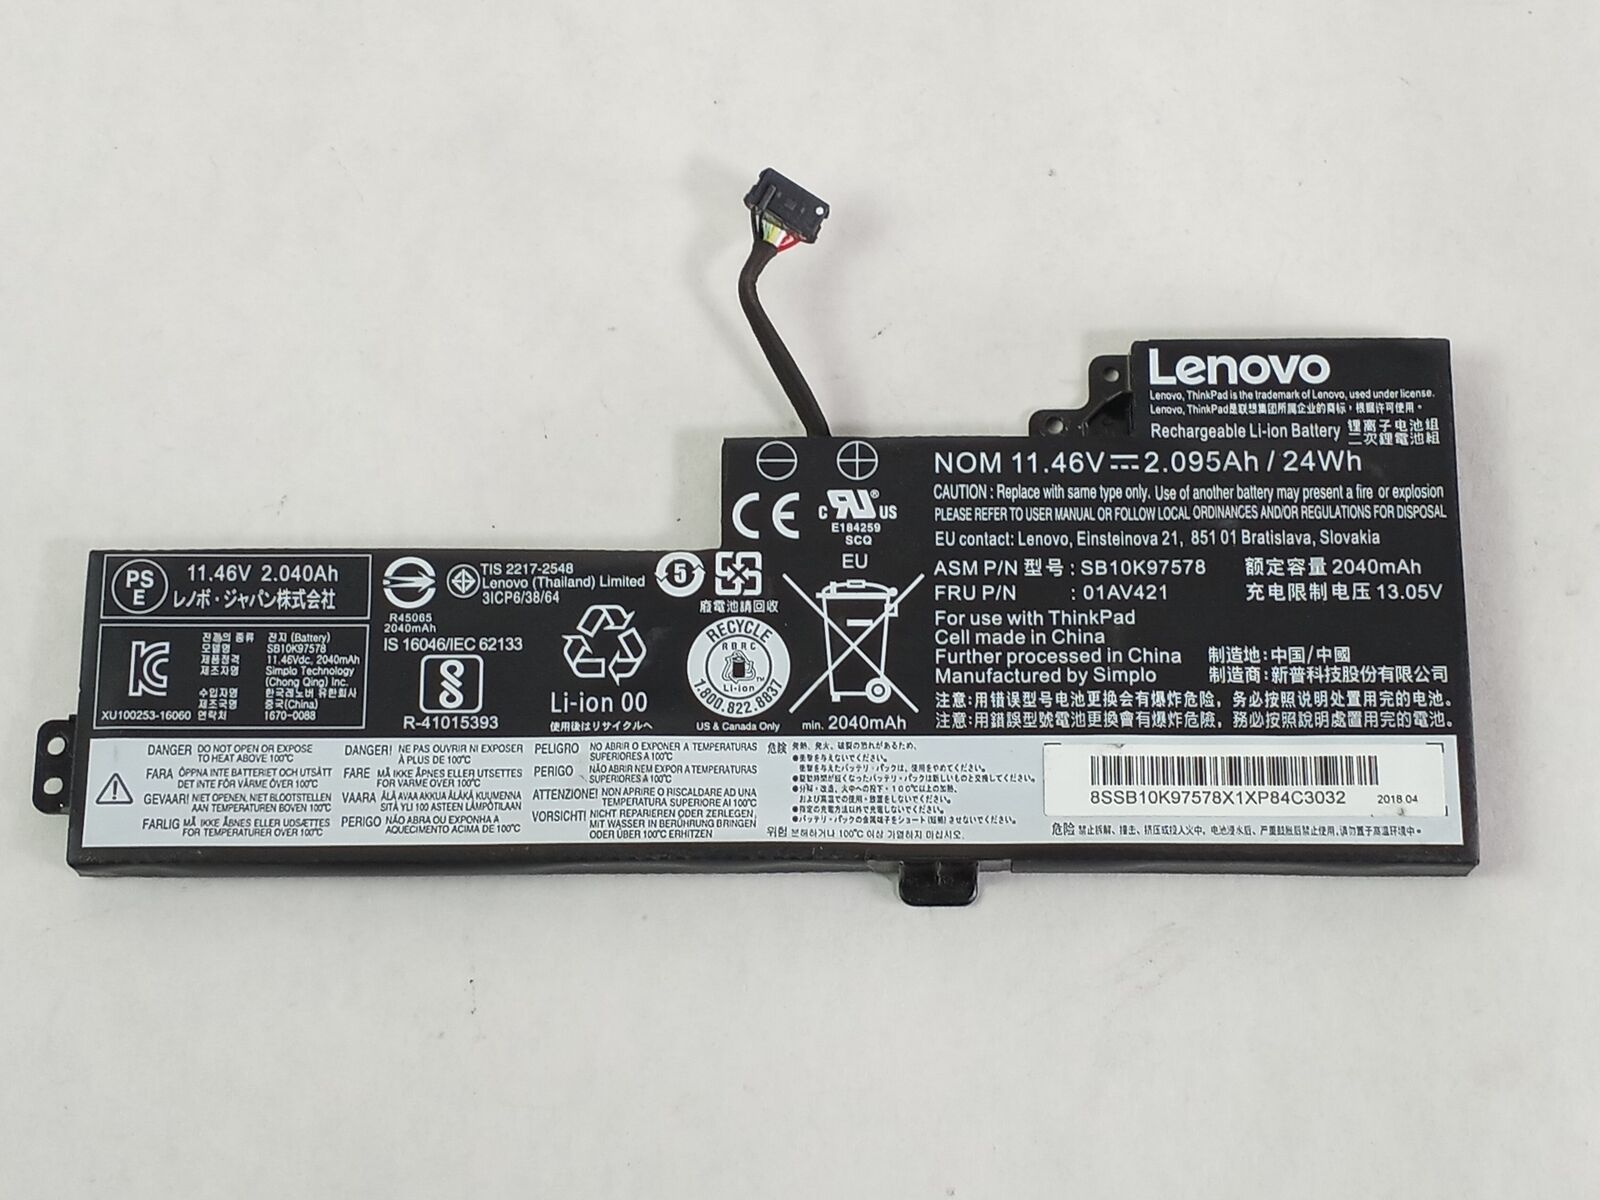 Lot of 5 Lenovo 01AV421 6 Cell 2040mAh Laptop Battery for ThinkPad T470 / T480